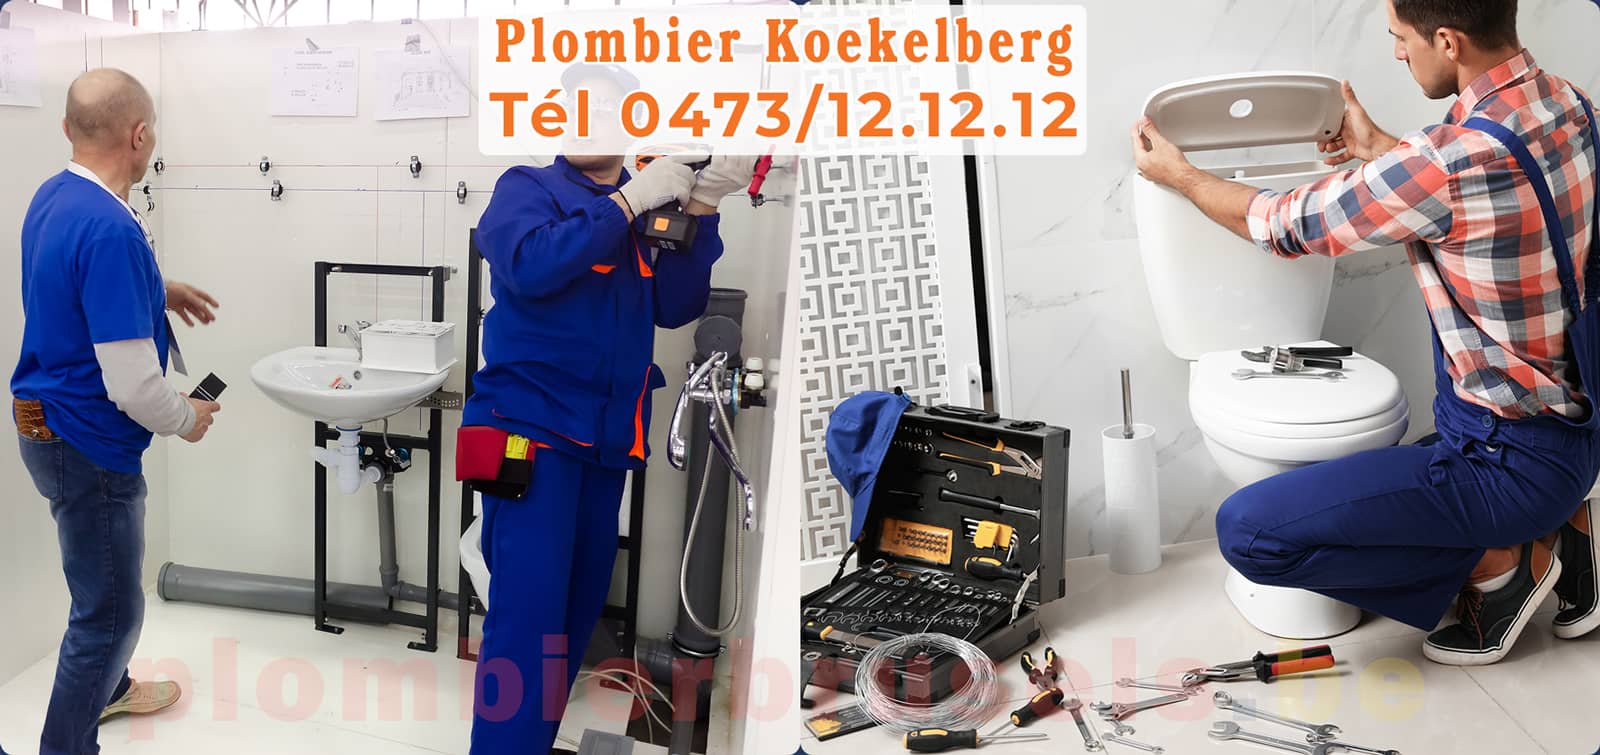 Plombier Koekelberg service de Plomberie tél 0473/12.12.12